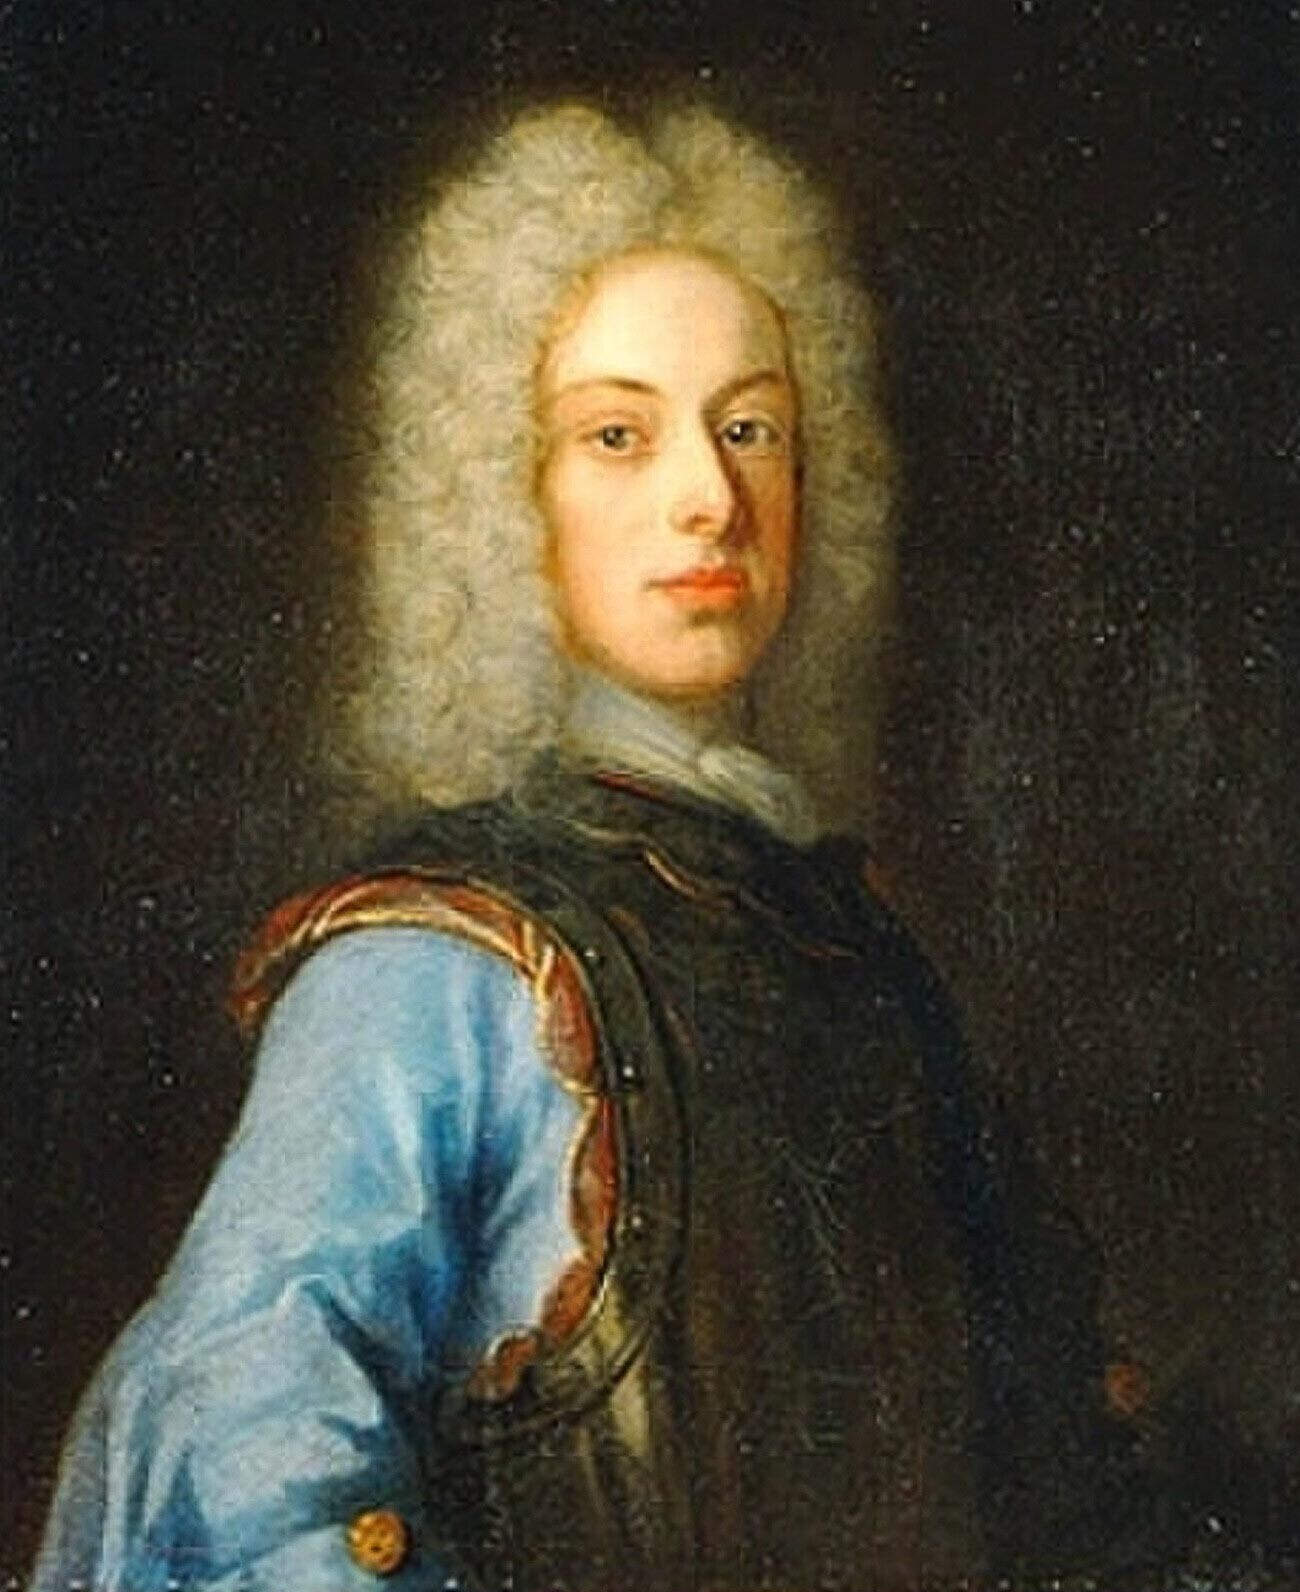 Карл Фридрих, војводата од Шлезвиг-Холштајн-Готорпа

